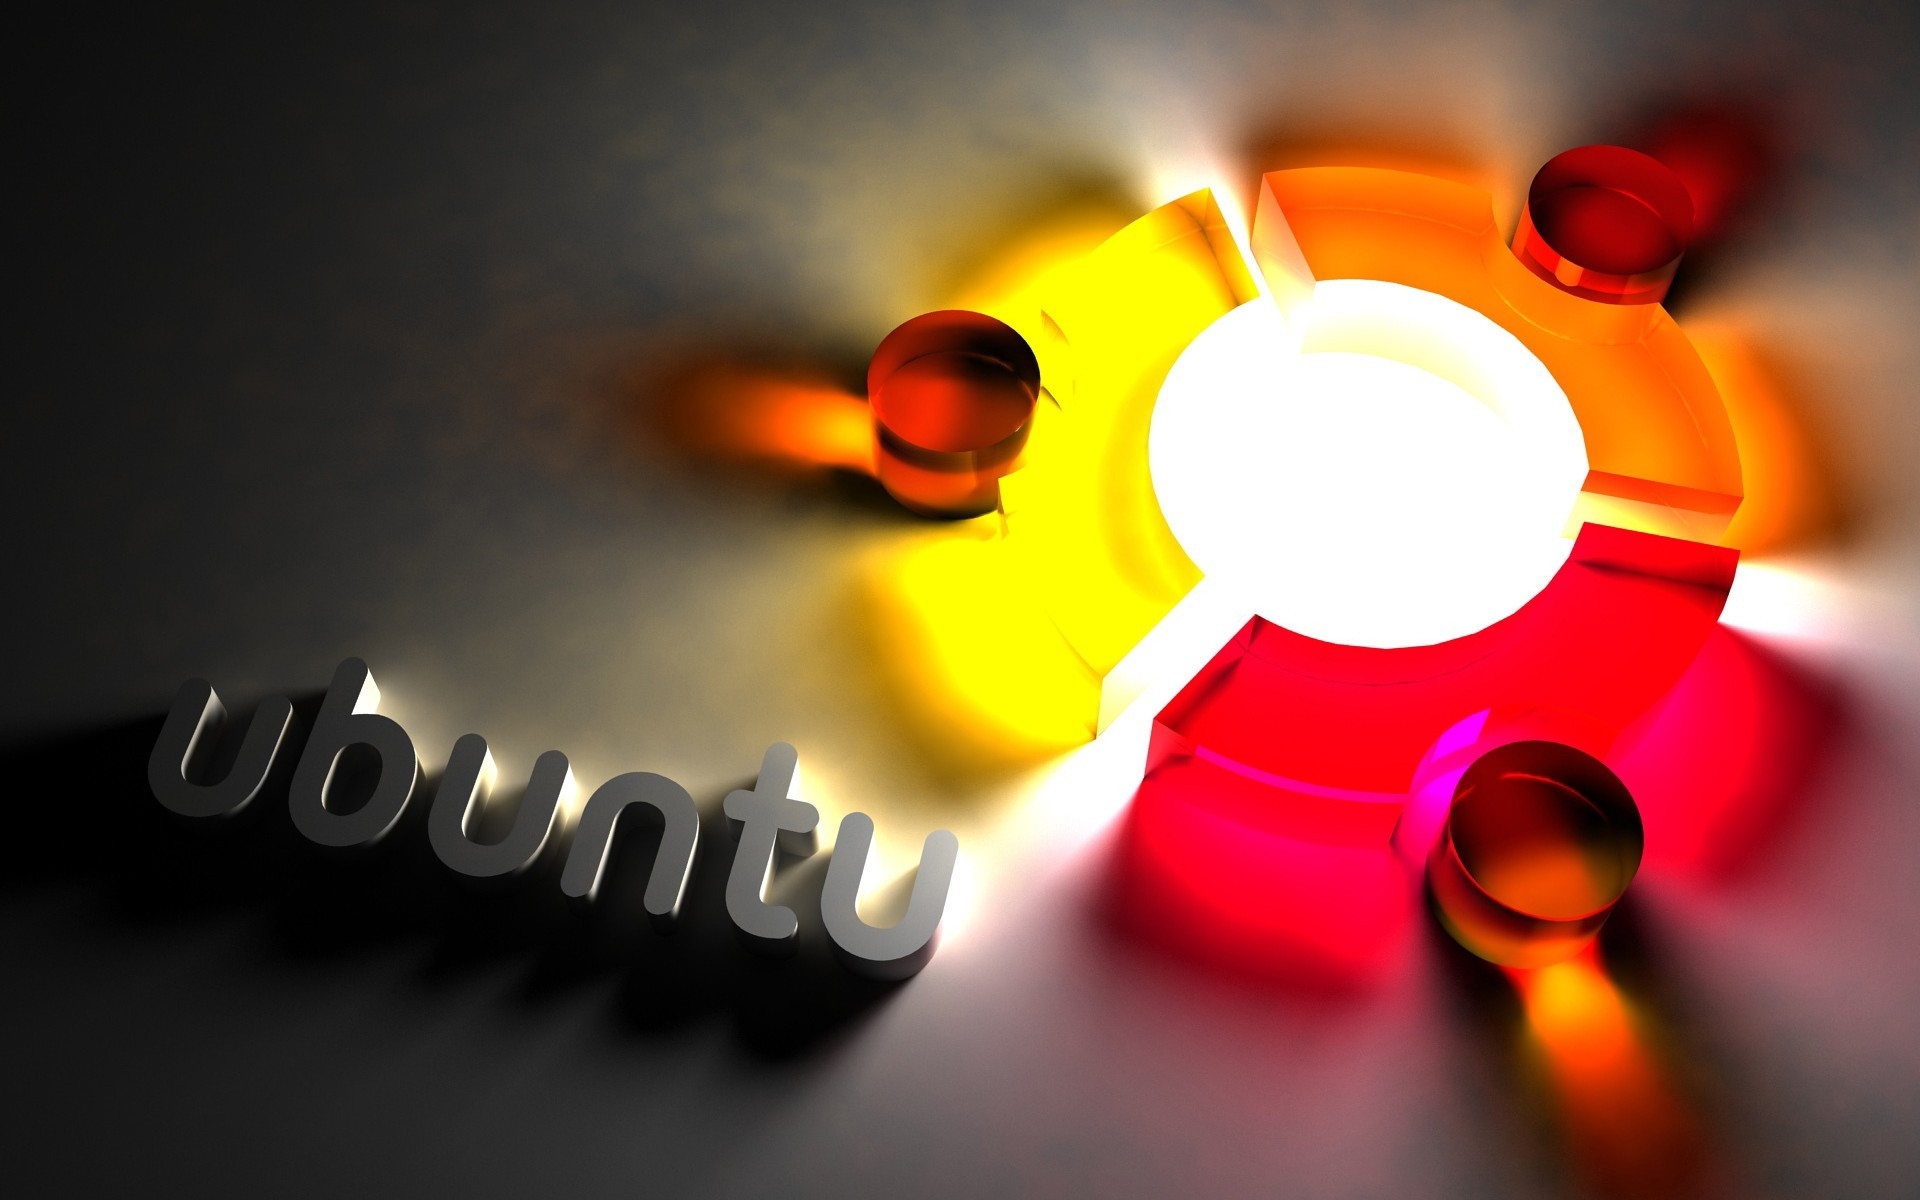 Ubuntu Cool Logo for 1920 x 1200 widescreen resolution